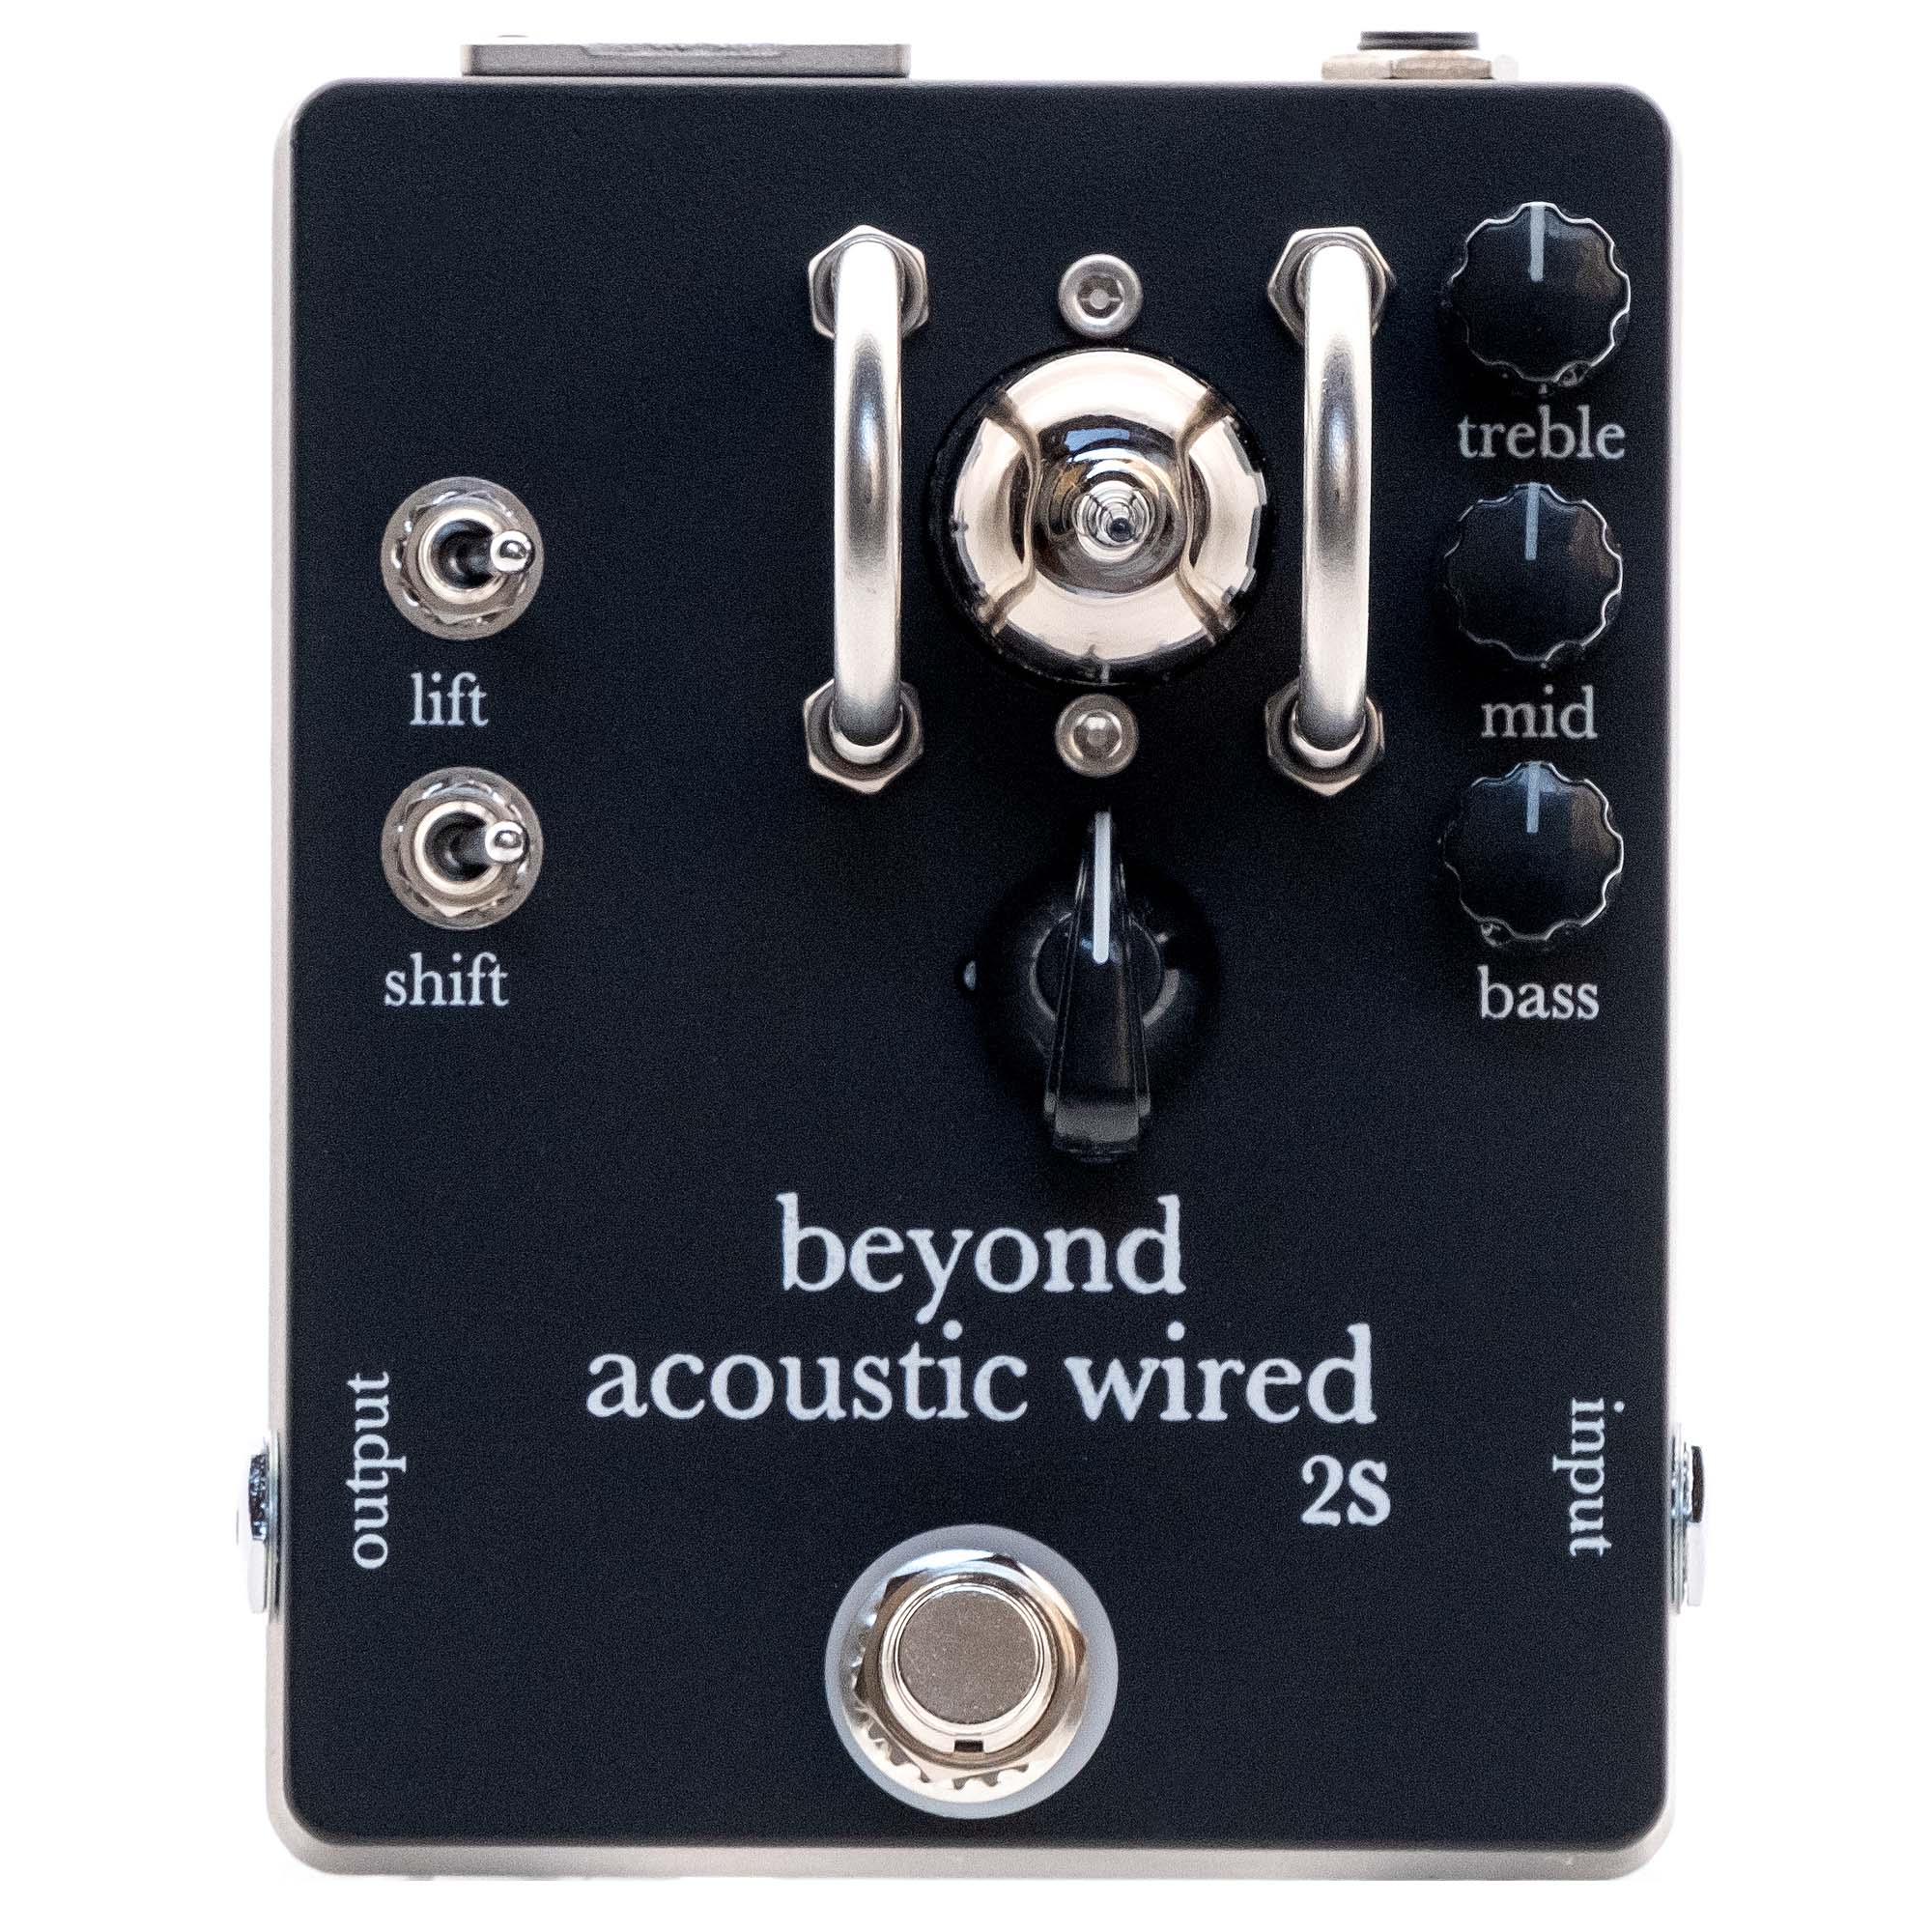 【あす楽対象商品】beyond / beyond acoustic wired 2S 真空管エレアコ用プリアンプ/DI